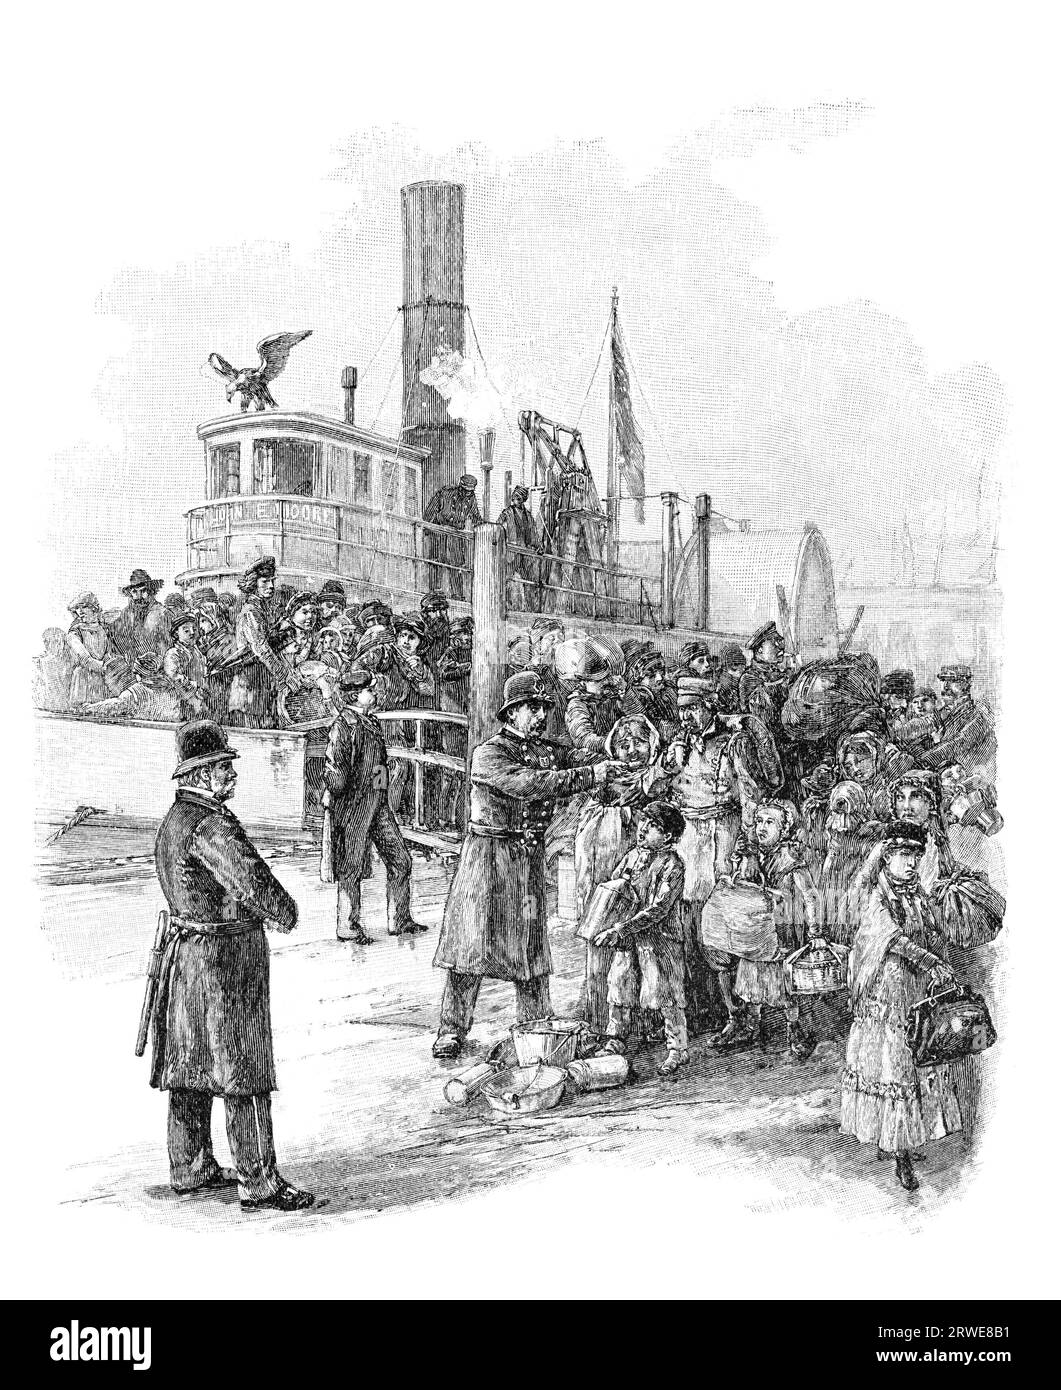 Débarquement des immigrants à Castle Garden, New York. Gravure de Harpers Monthly Magazine juin 1884 Banque D'Images